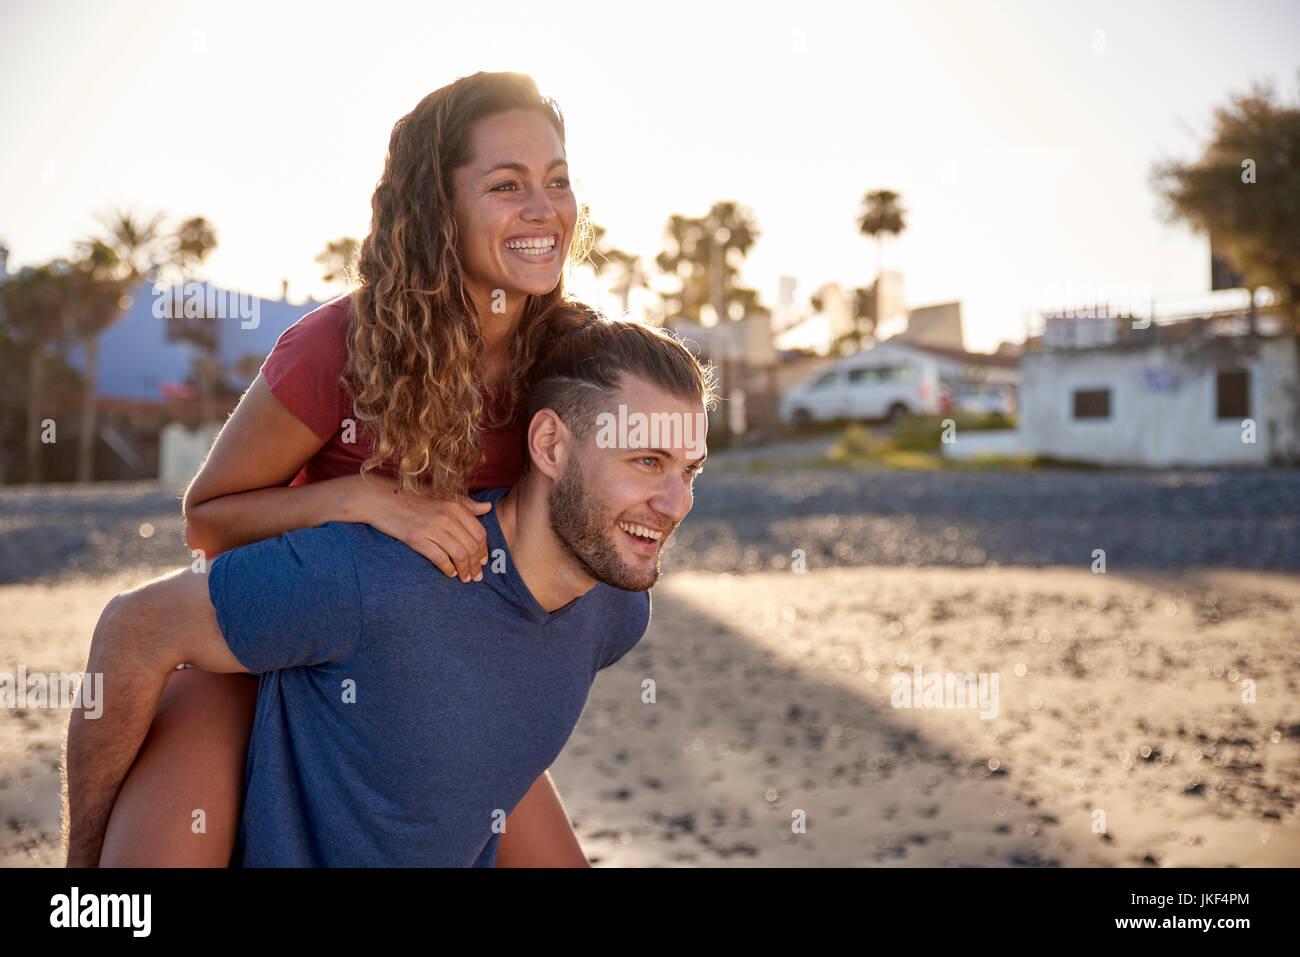 Junge Mann seiner Freundin ein huckepack Fahrt am Strand geben Stockfoto